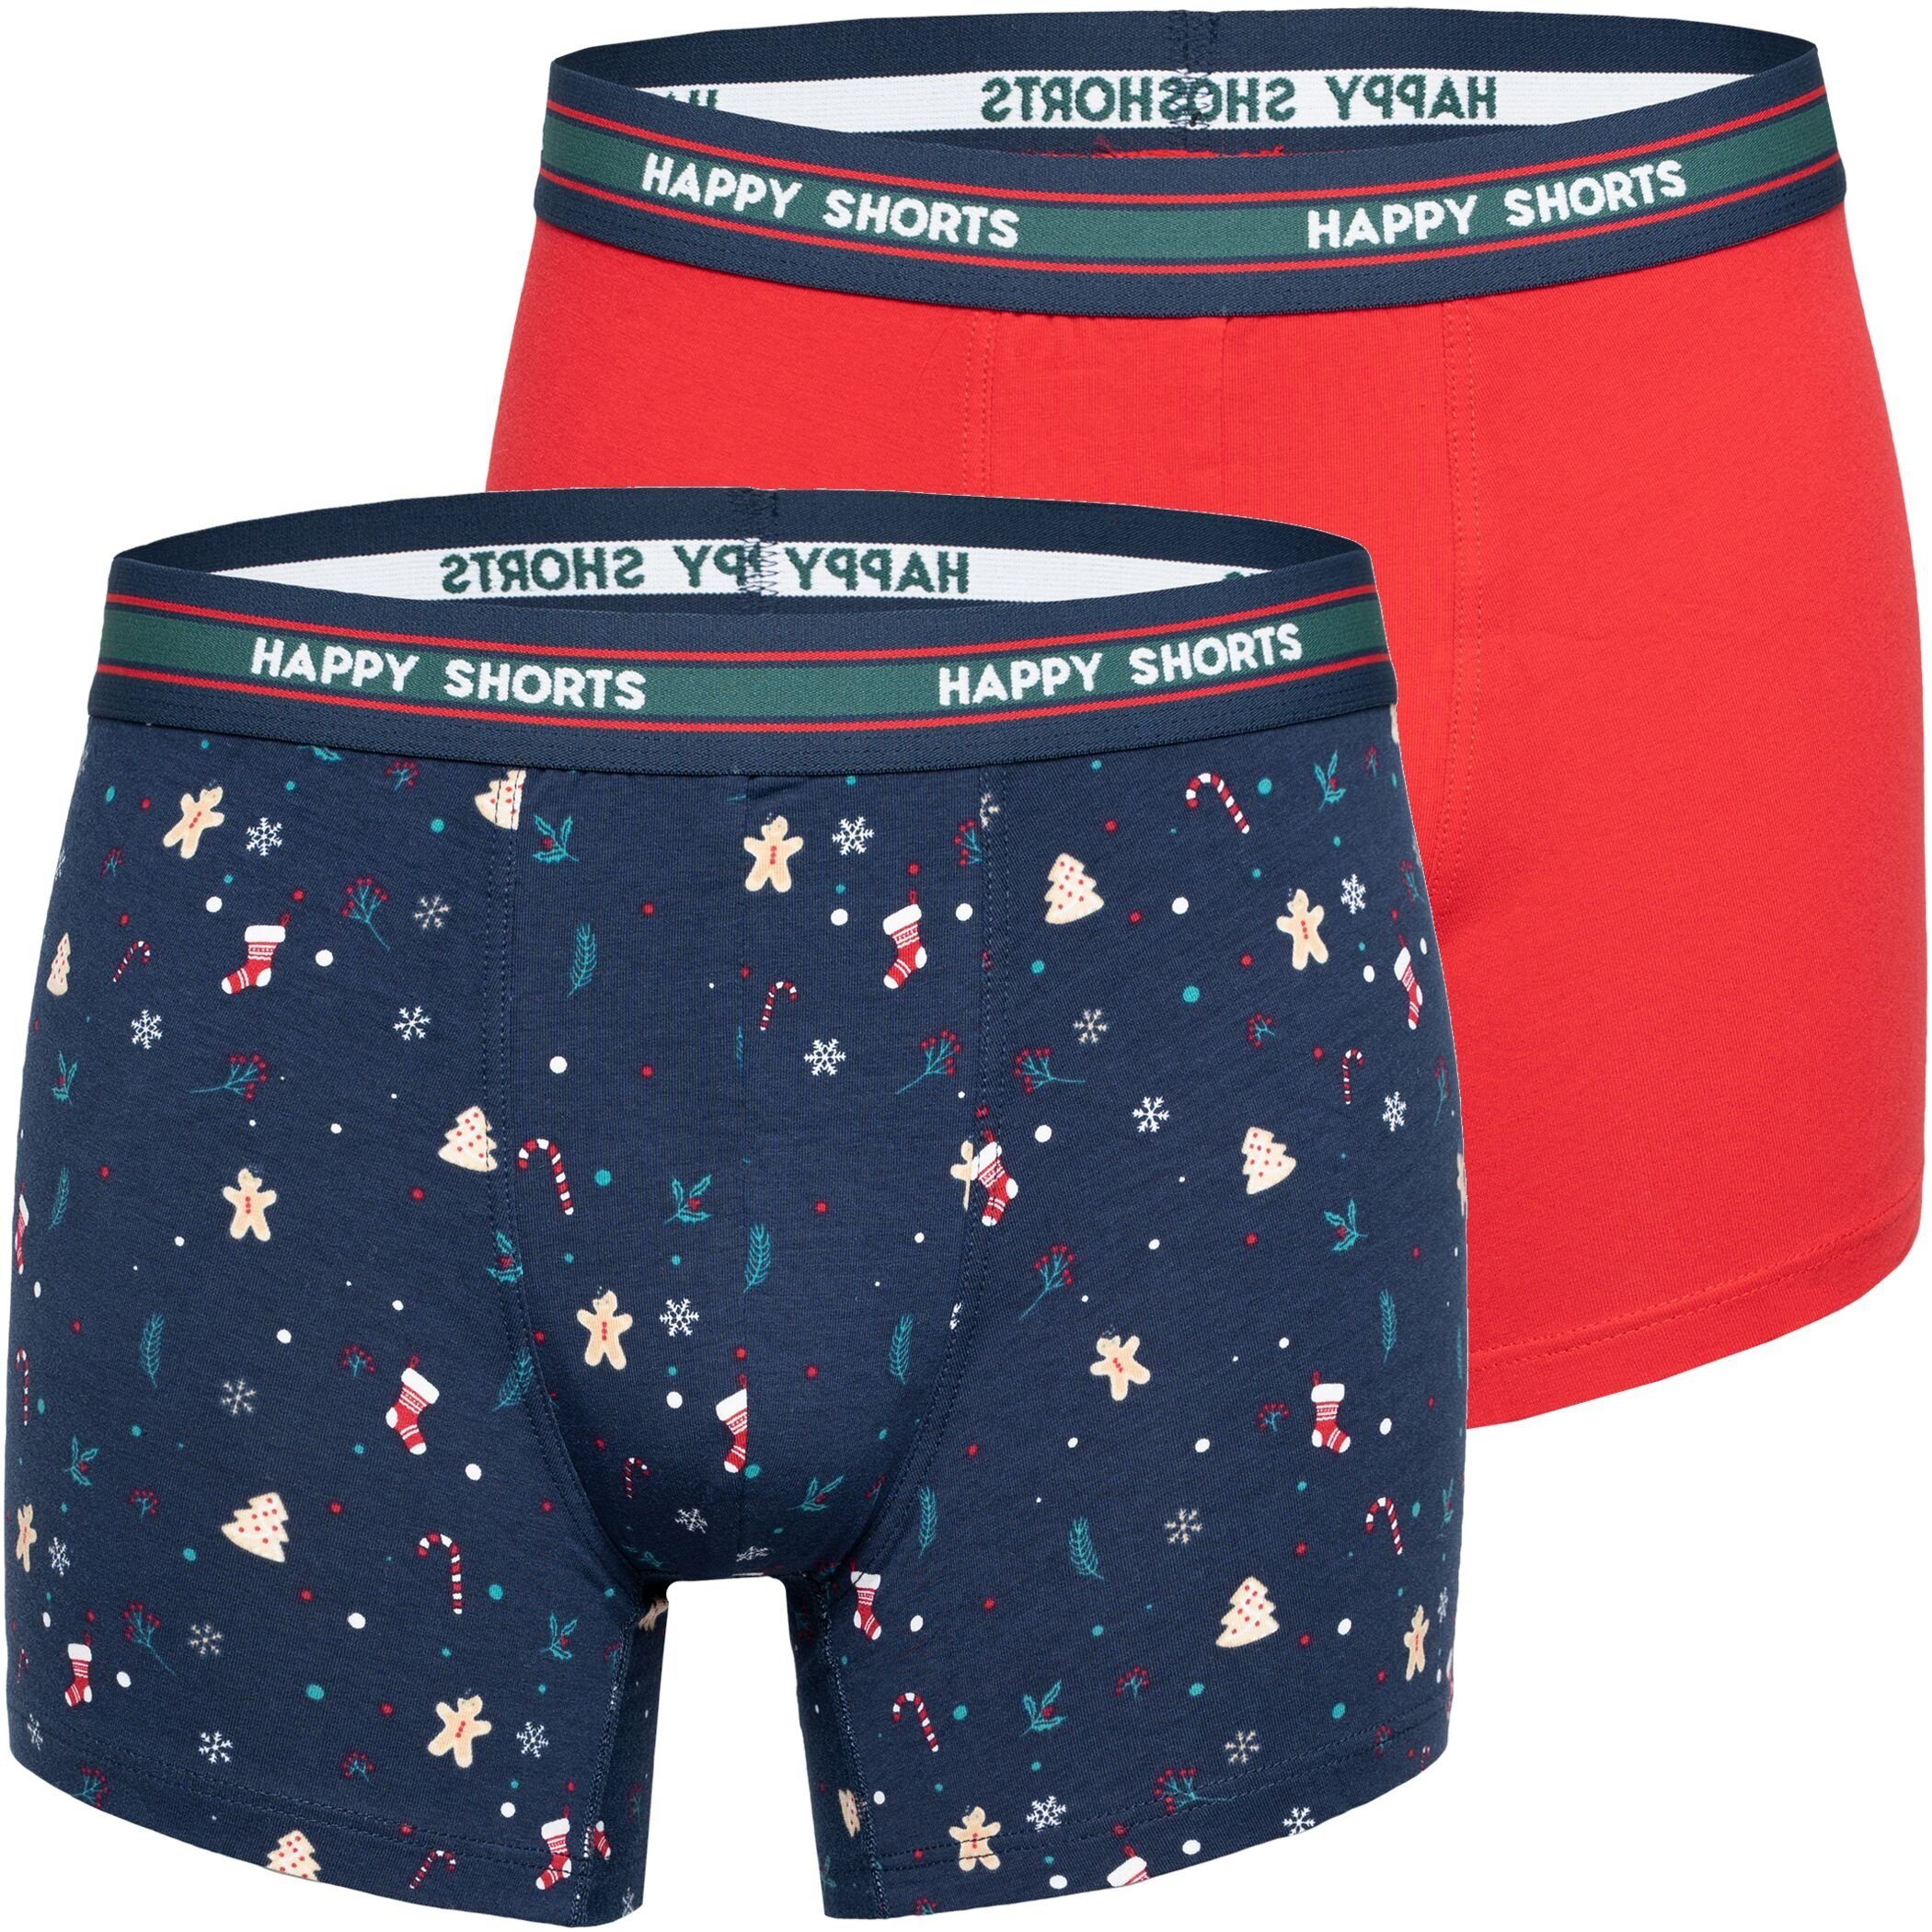 HAPPY SHORTS Trunk 2 Happy (1-St) Mistelzweig, Pants Herren Shorts Schneeflocke Boxer Motiv Jersey Trunk Christmas Lebkuchenmann, Boxershorts Stuff